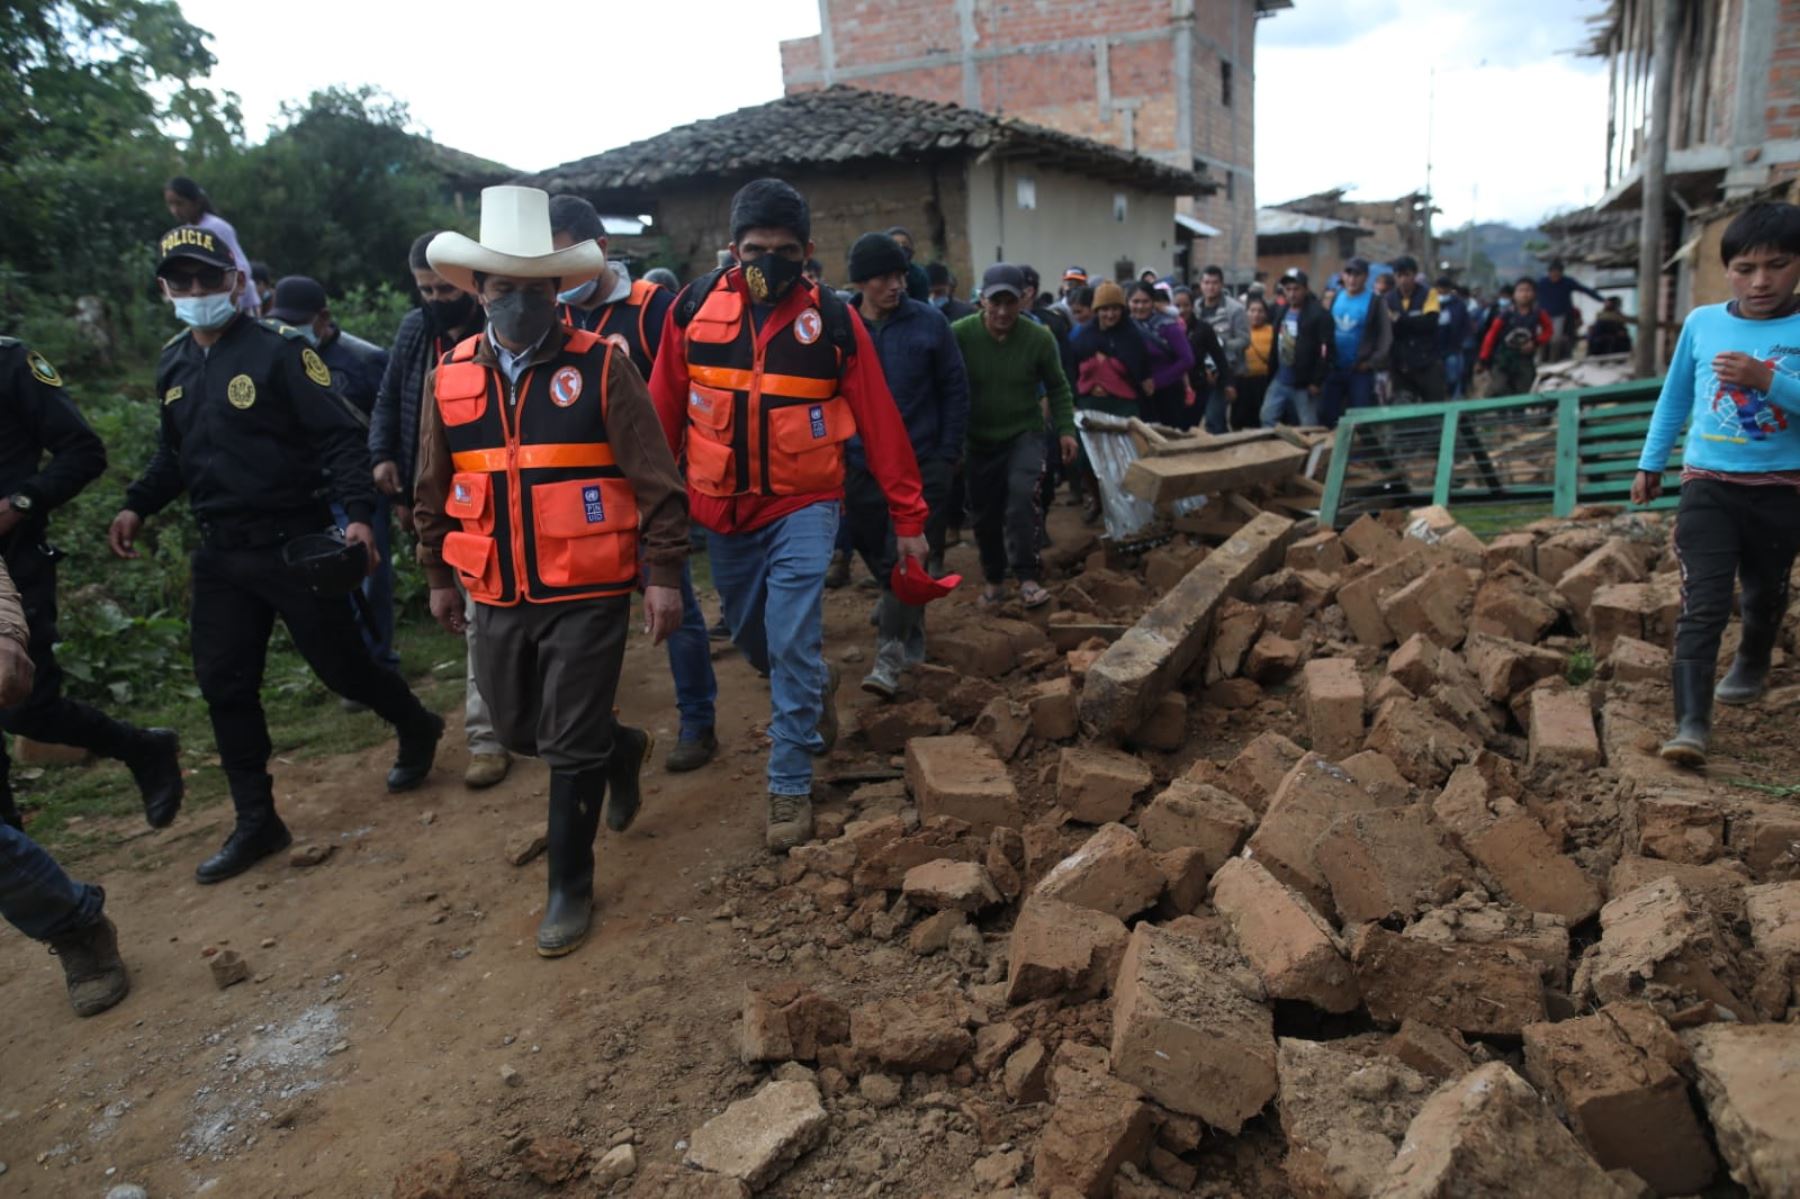 El presidente Pedro Castillo se encuentra en la localidad La Jalca Grande, en Amazonas, realizando la inspección a las zonas afectadas por el sismo y brindando apoyo a la población afectada. Foto: ANDINA/Prensa Presidencia